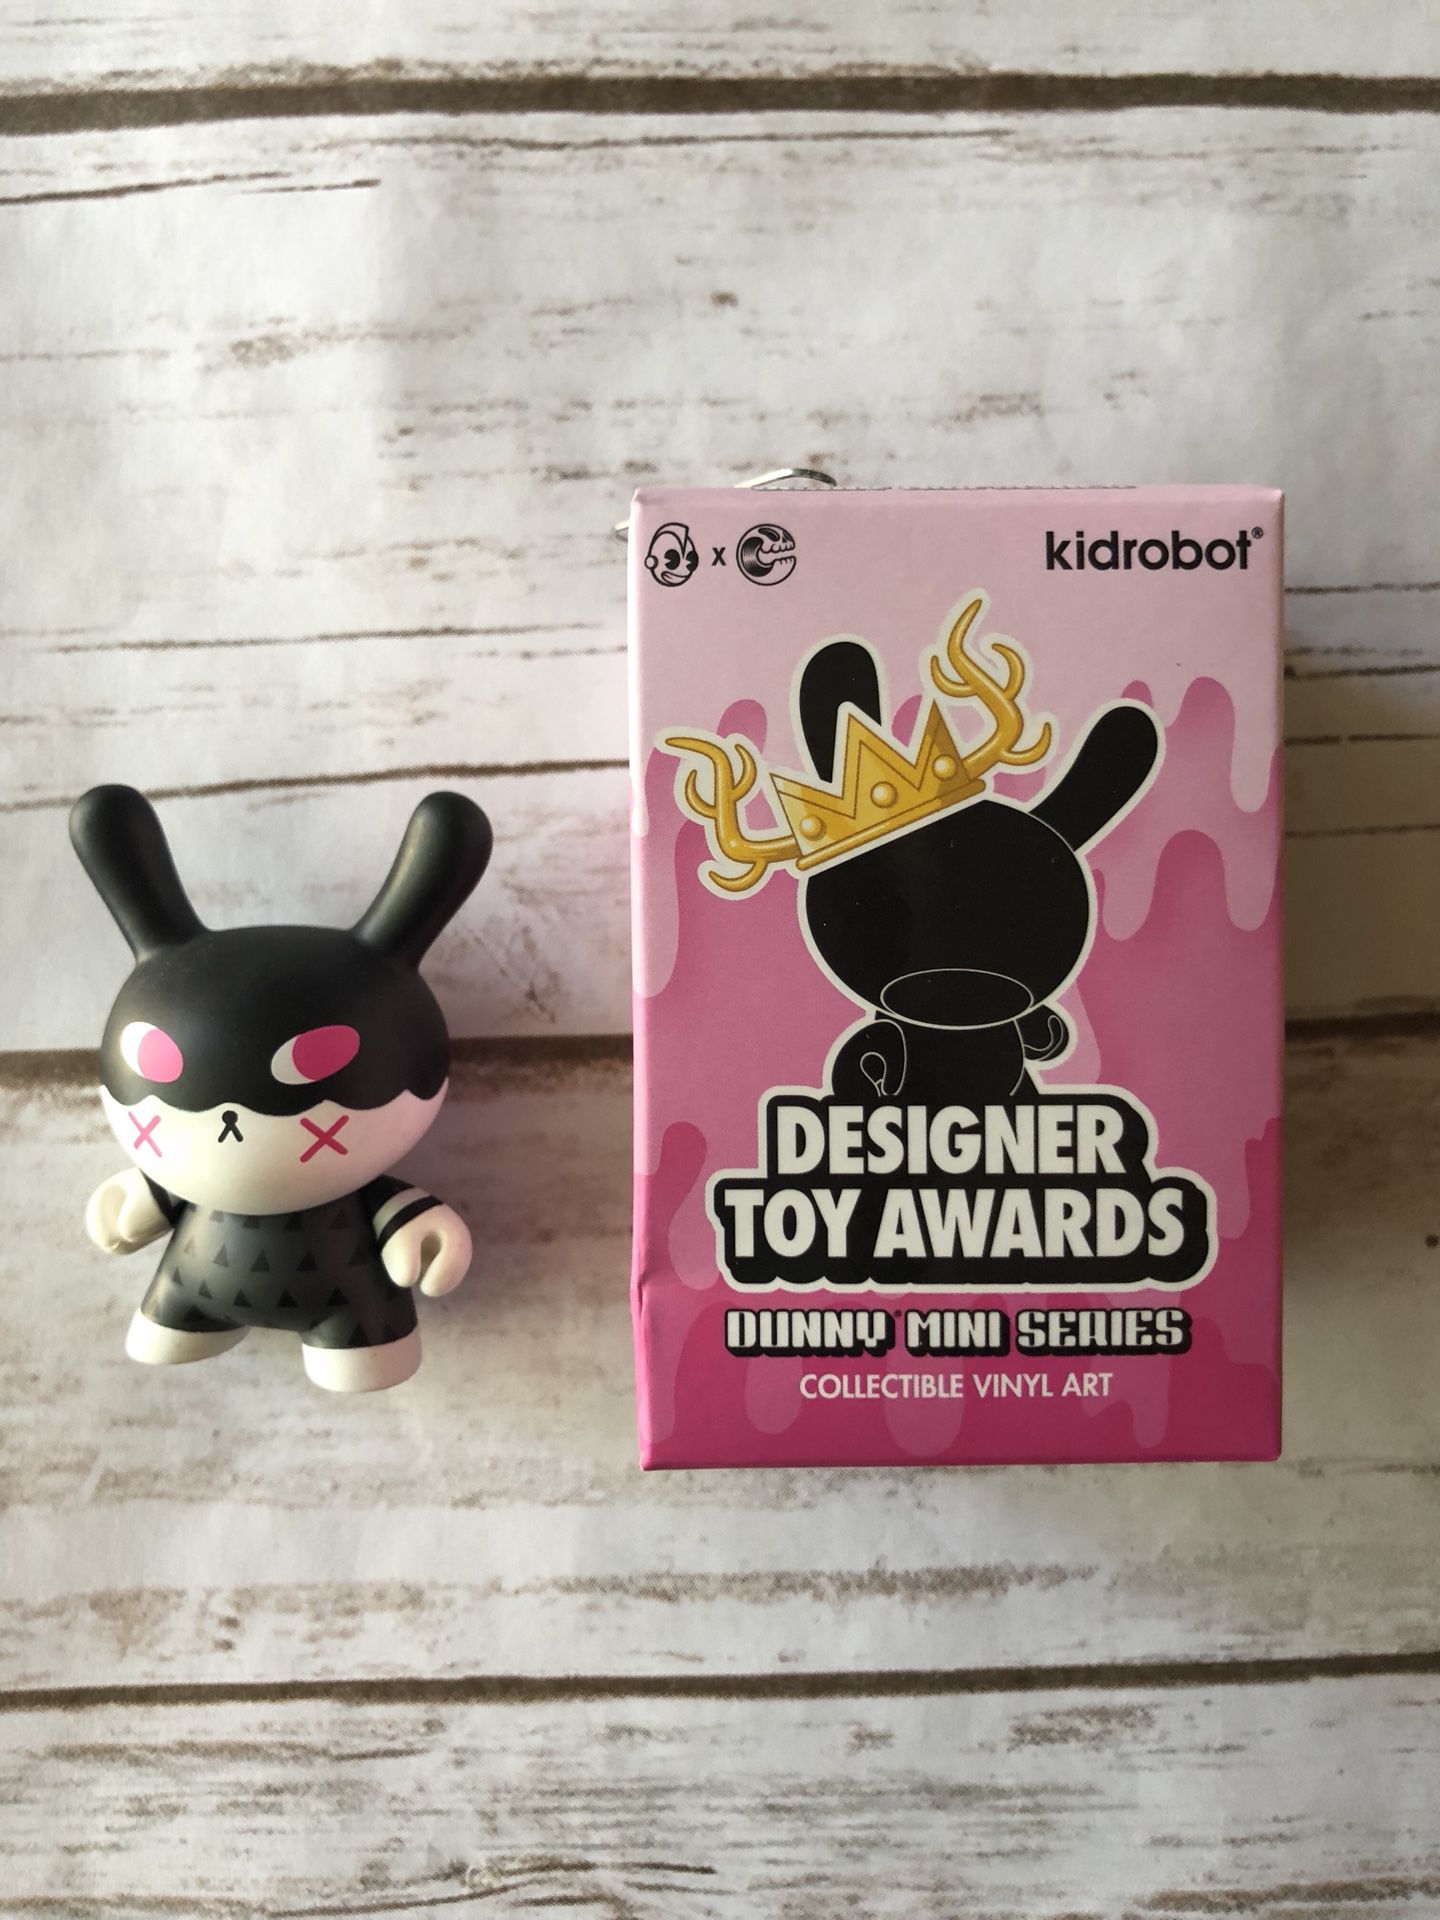 Kidrobot Designer Toy Awards Dunny Series 3” Figure - Illuminati blind box open